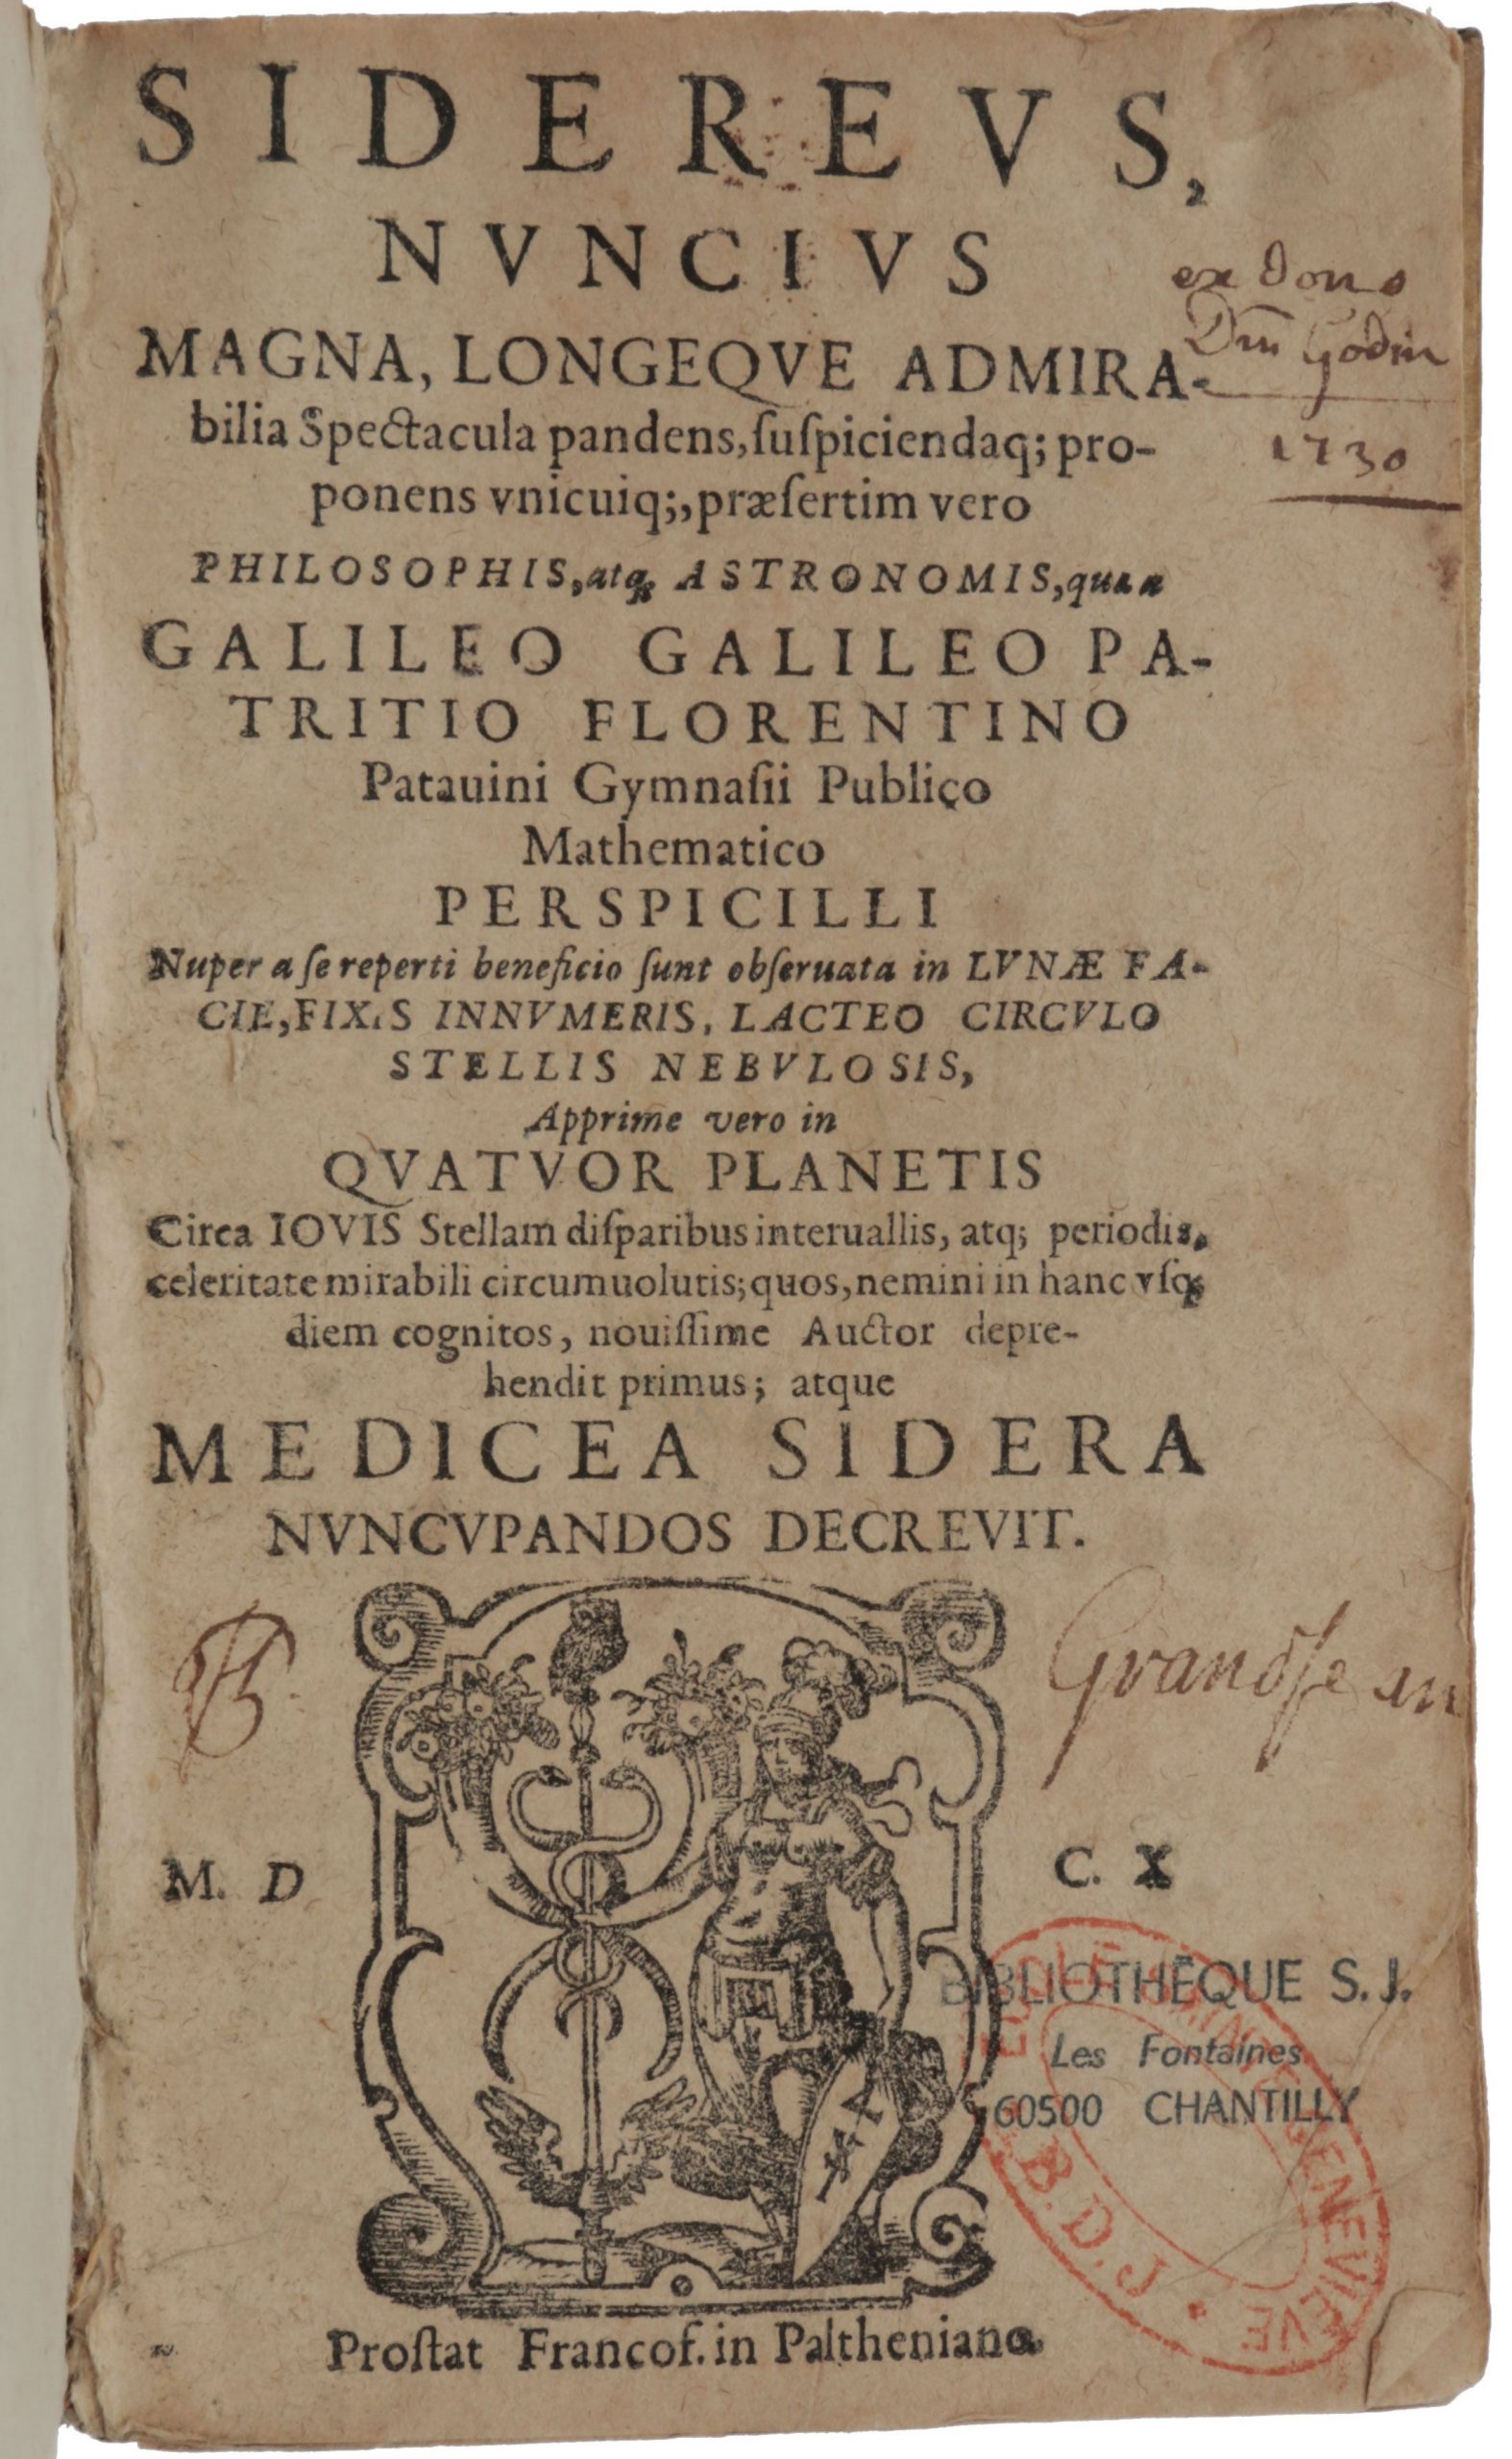 Una clamorosa edizione pirata coeva del “Sidereus Nuncius” di Galileo